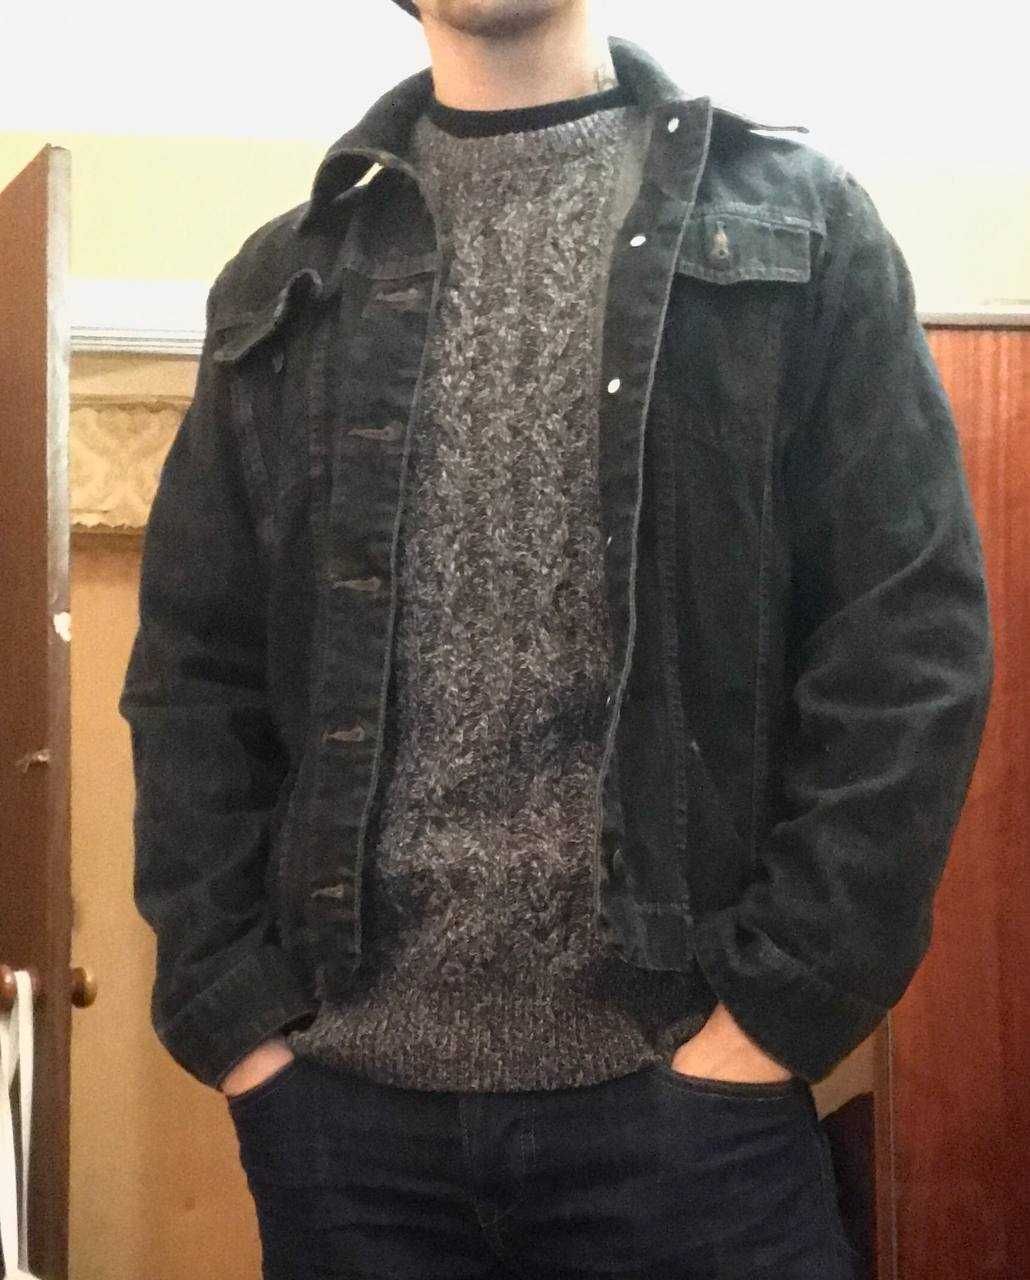 Куртка джинсовая мужская